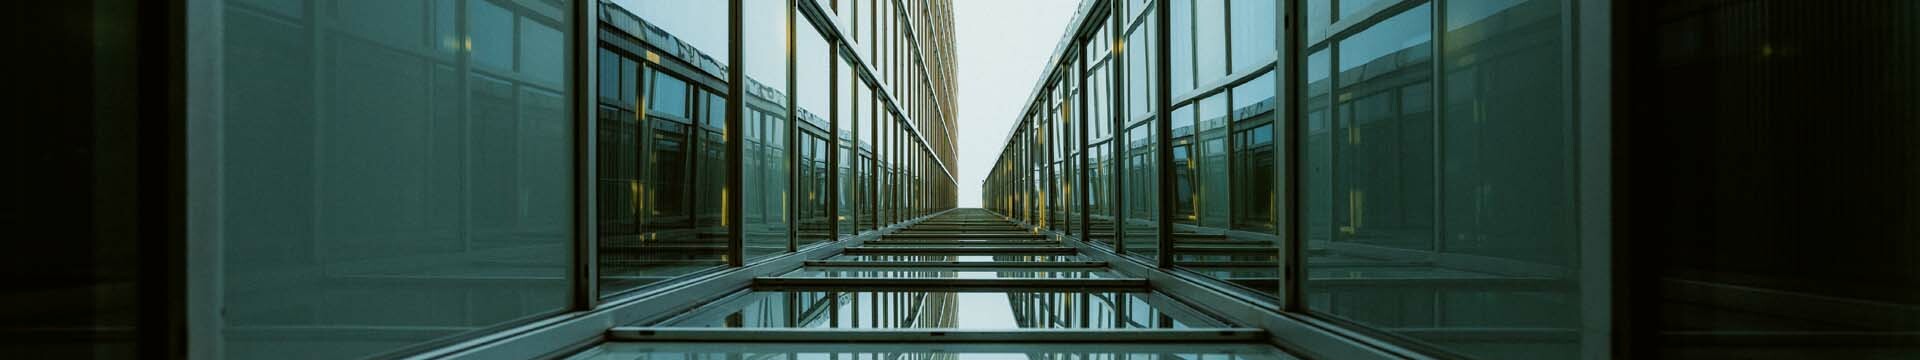 Glasfenster am Dreischeibenhaus in Düsseldorf aus der Froschperspektive 